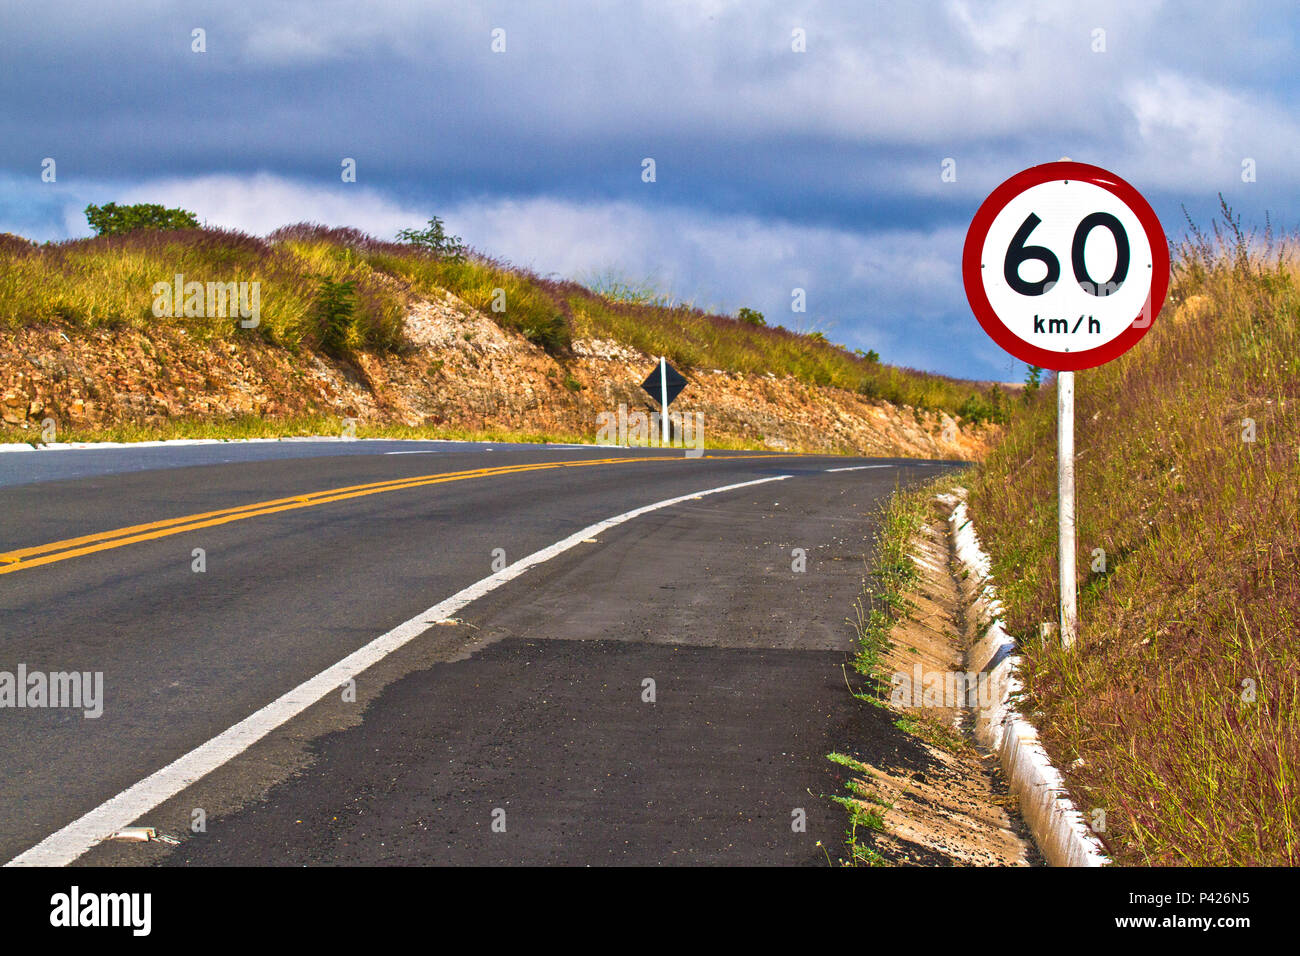 PLaca; Placa de 60 km/h; PLaca de rodovia; Rodovia MG 050; Estrada; Capitólio; Minas Gerais; Sudeste; Brasil Stock Photo